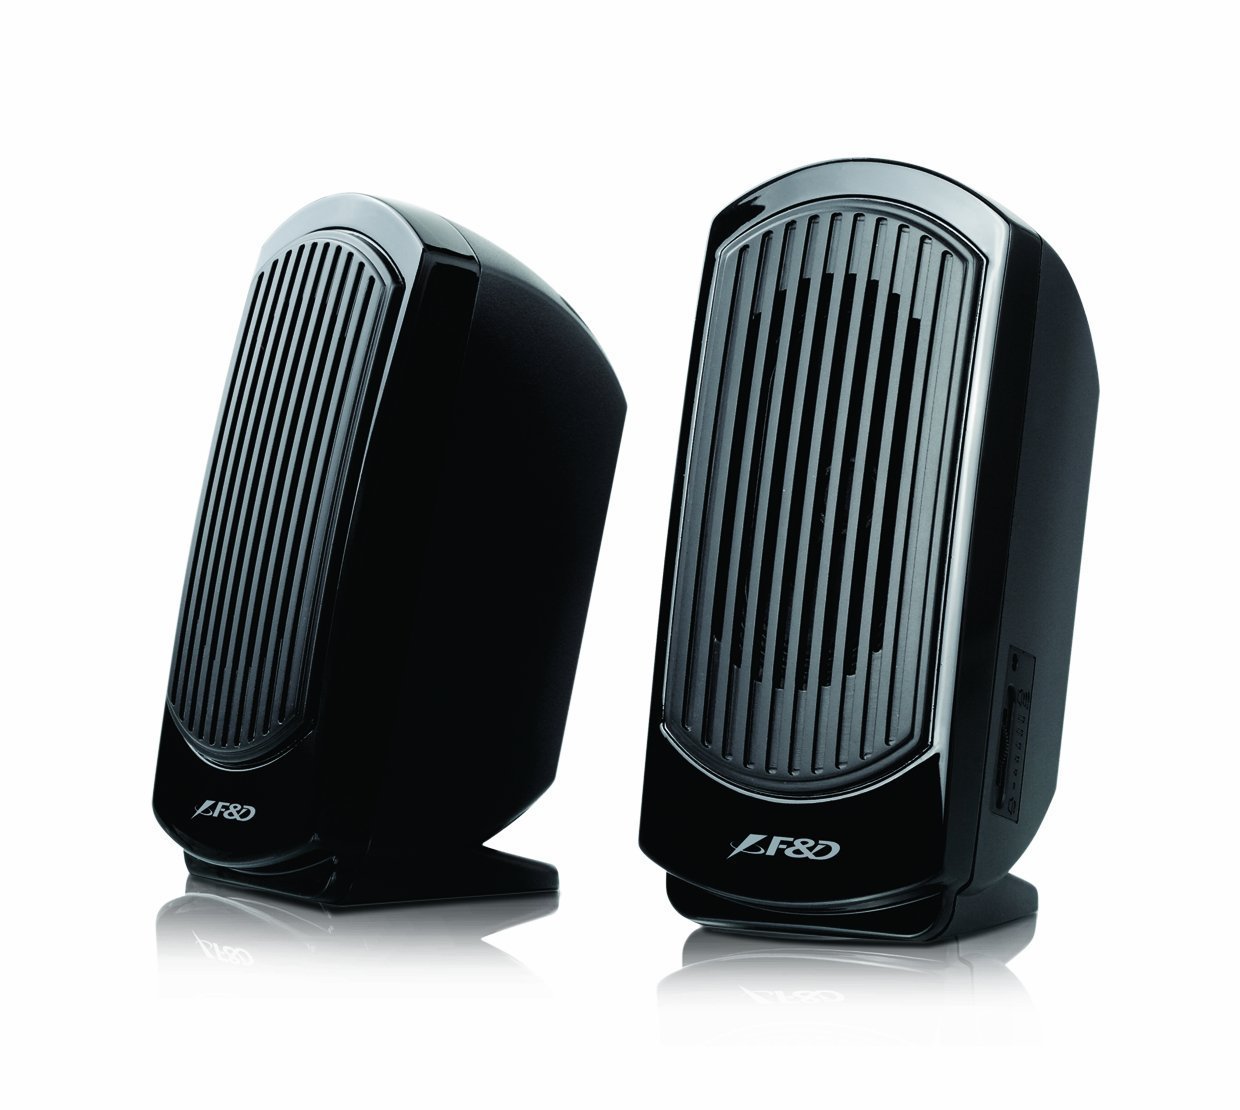 F&D V10 2.0 multimedia speakers